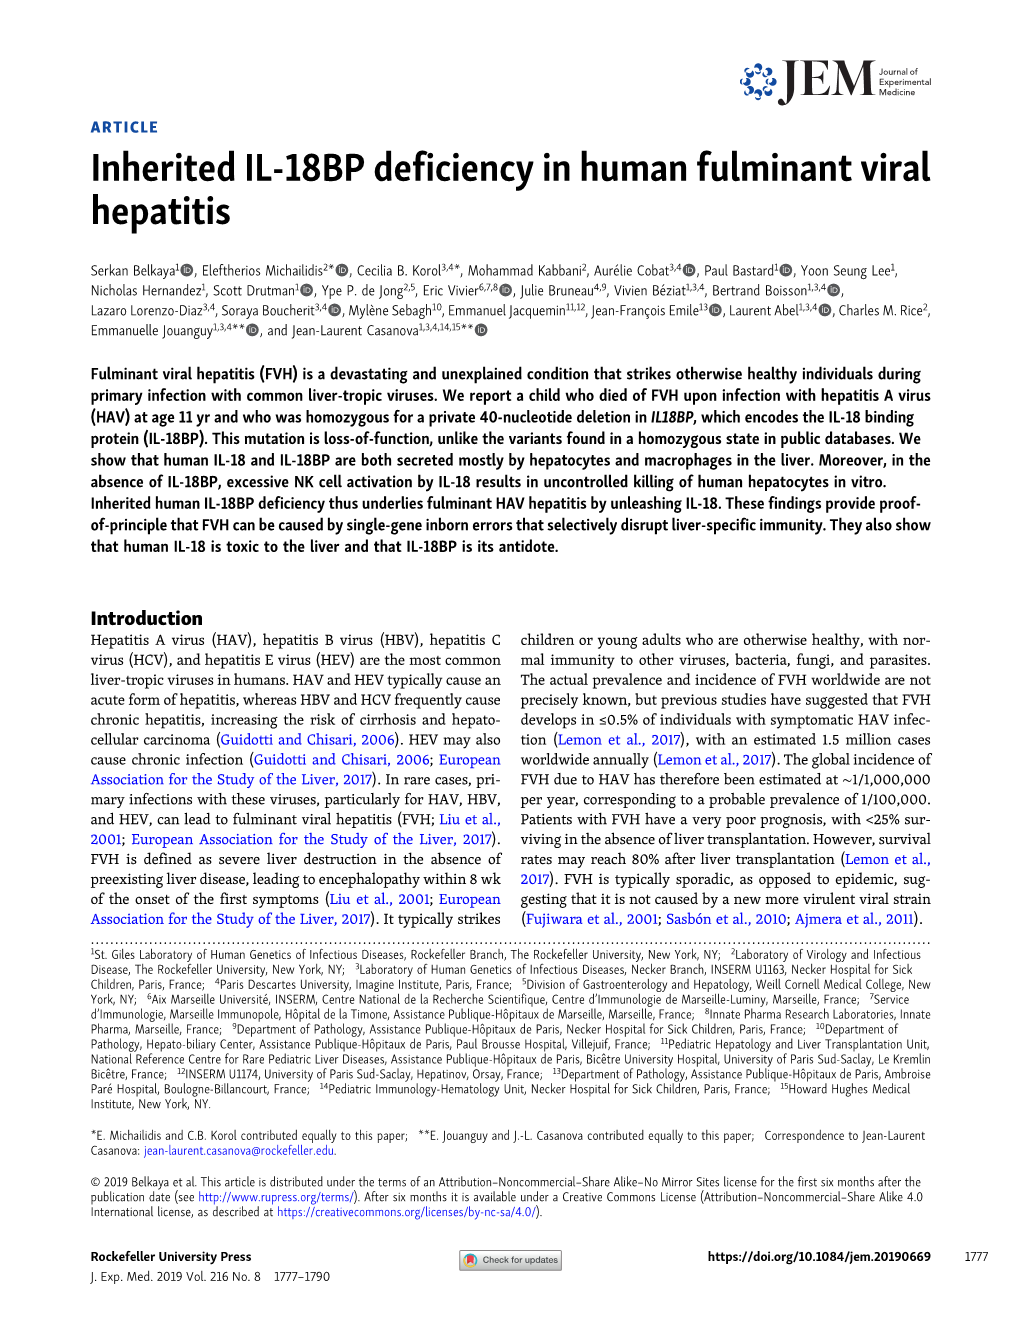 Inherited IL-18BP Deficiency in Human Fulminant Viral Hepatitis